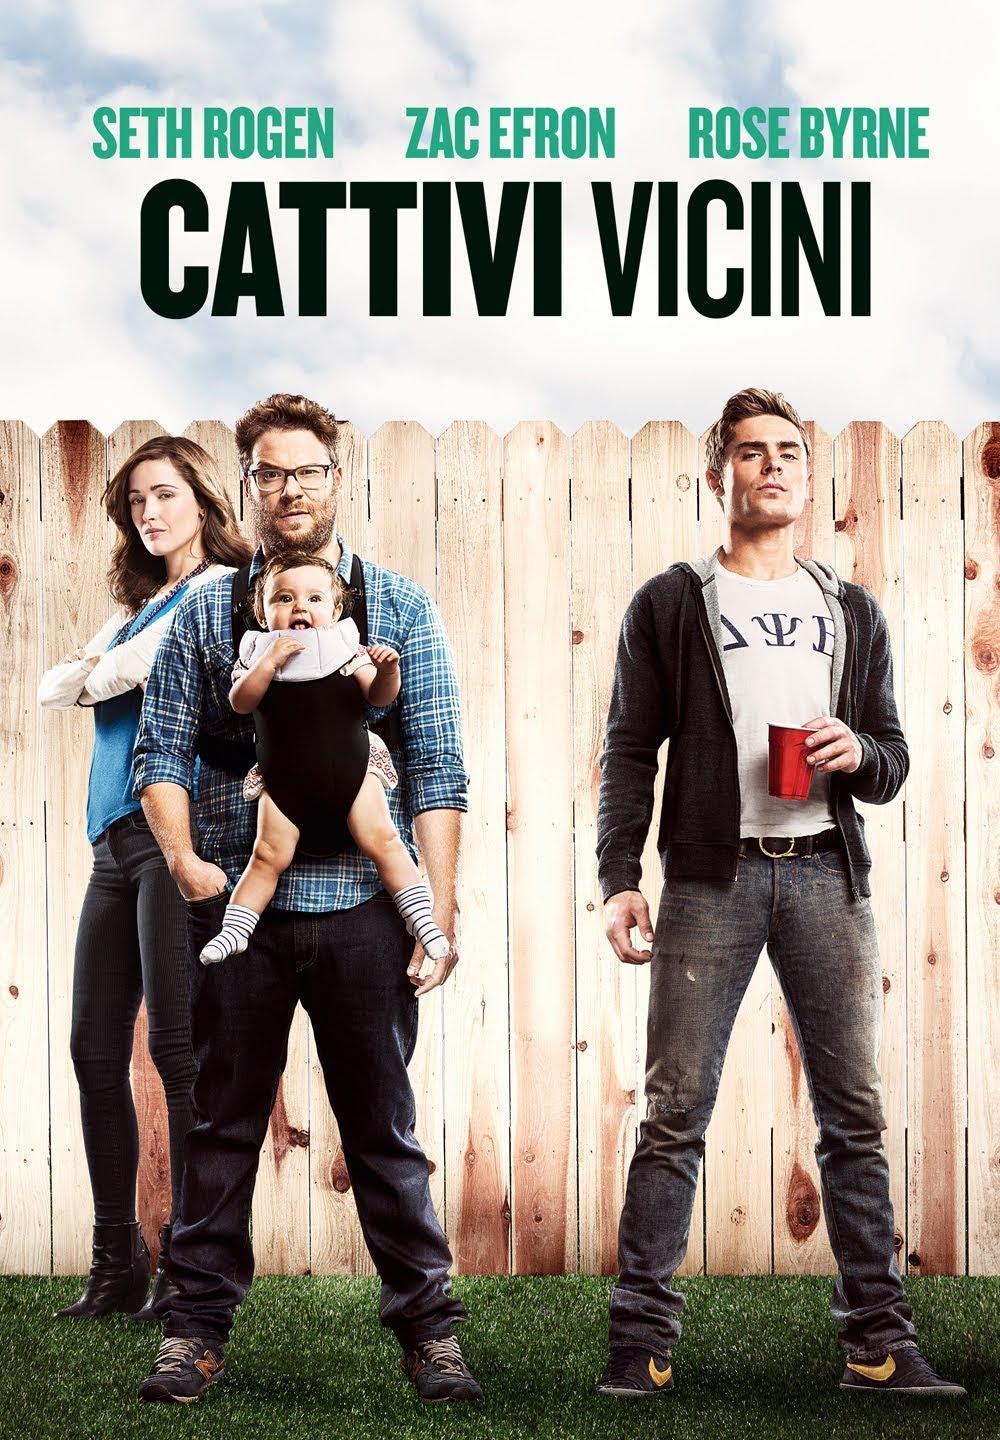 Cattivi Vicini [HD] (2014)